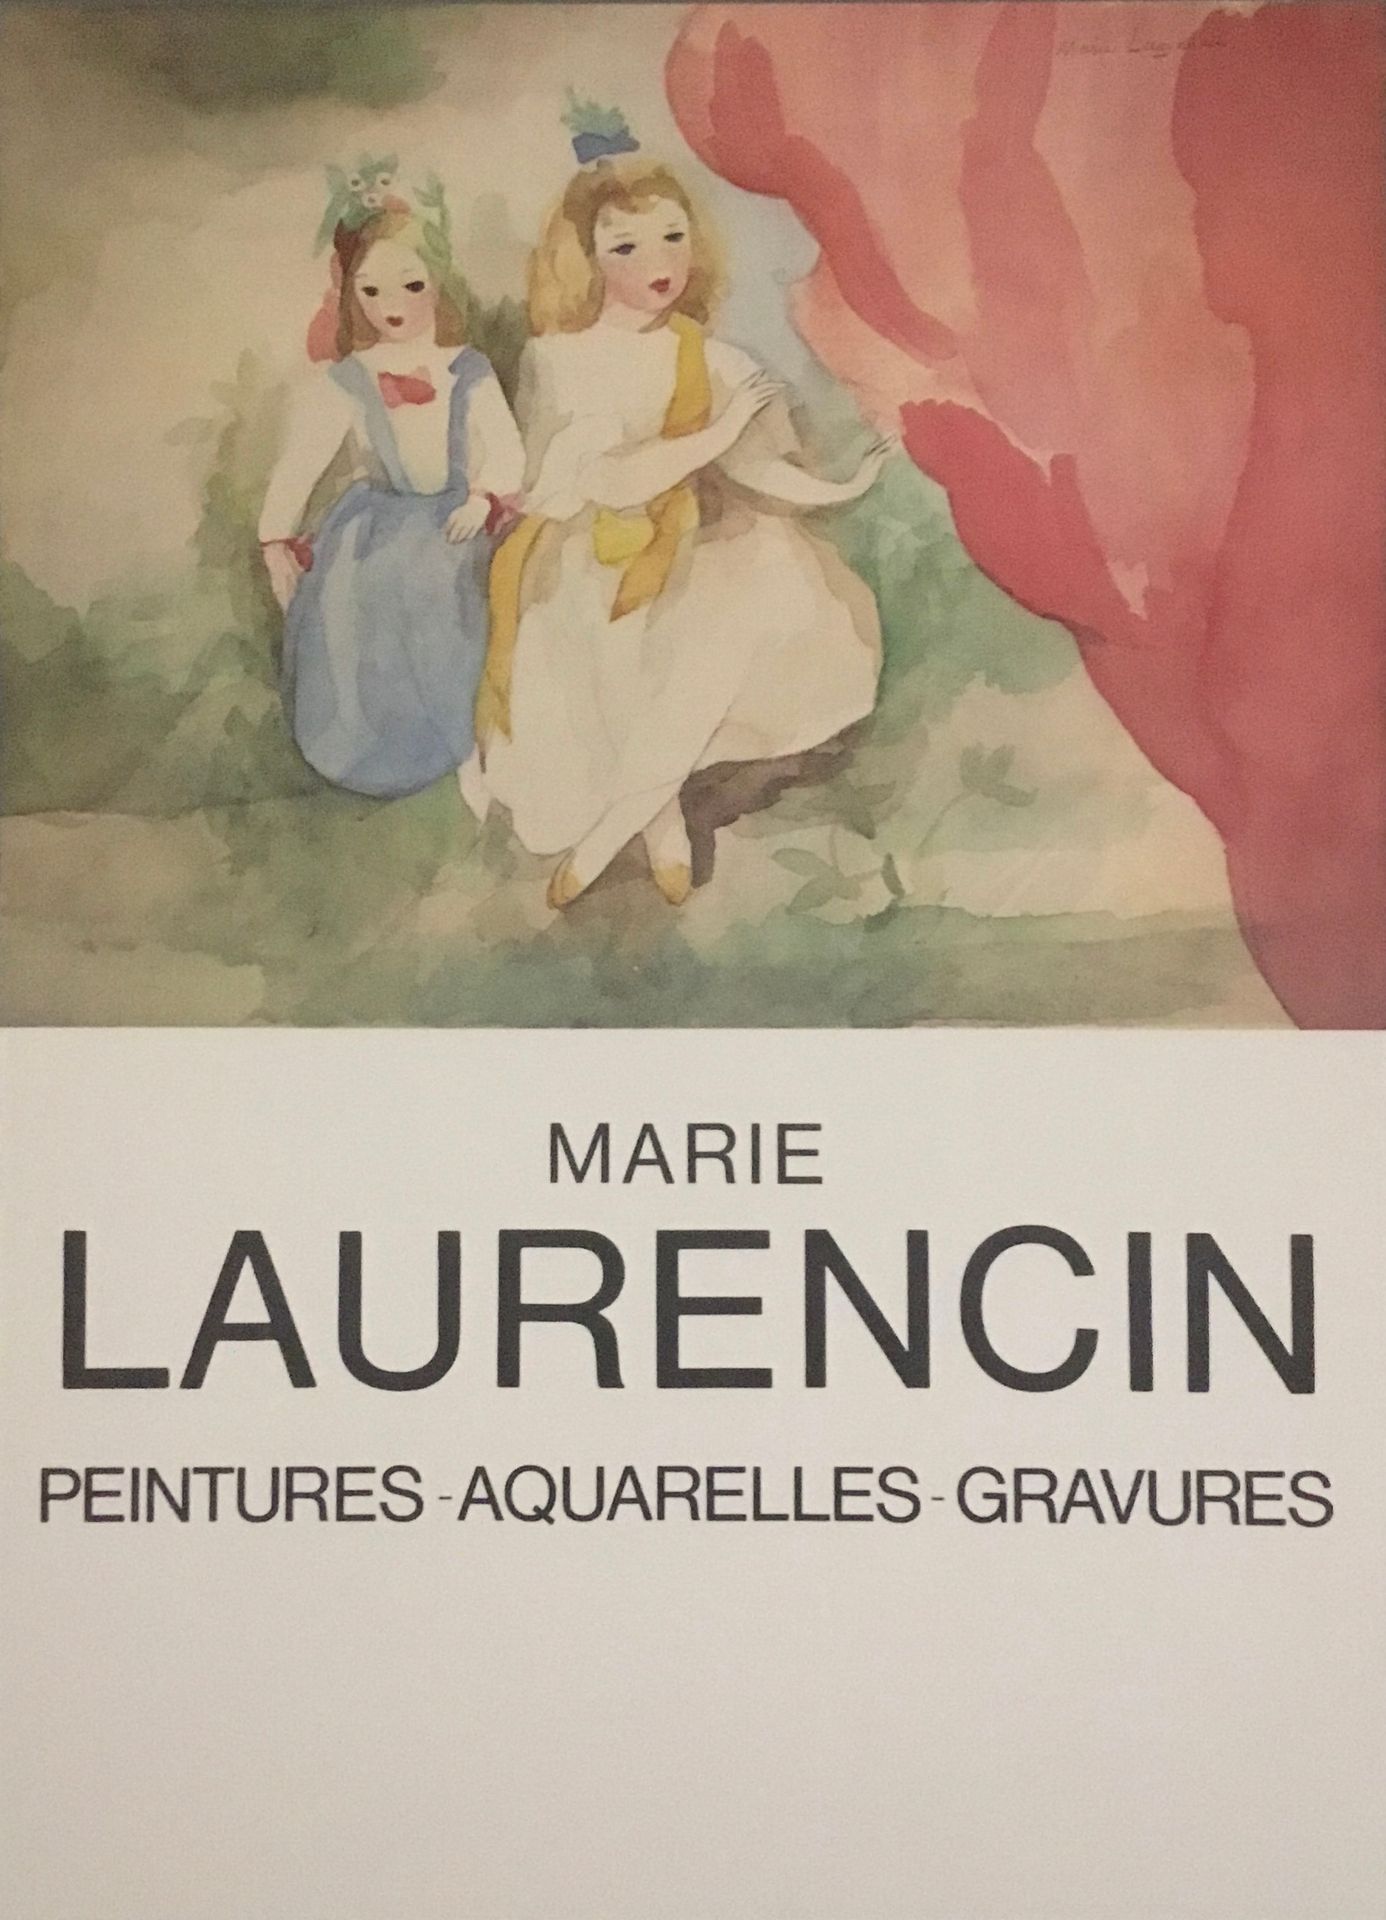 Null LAURENCIN Marie 

Cartel en offset. 

Formato 61 x 44,5 cm